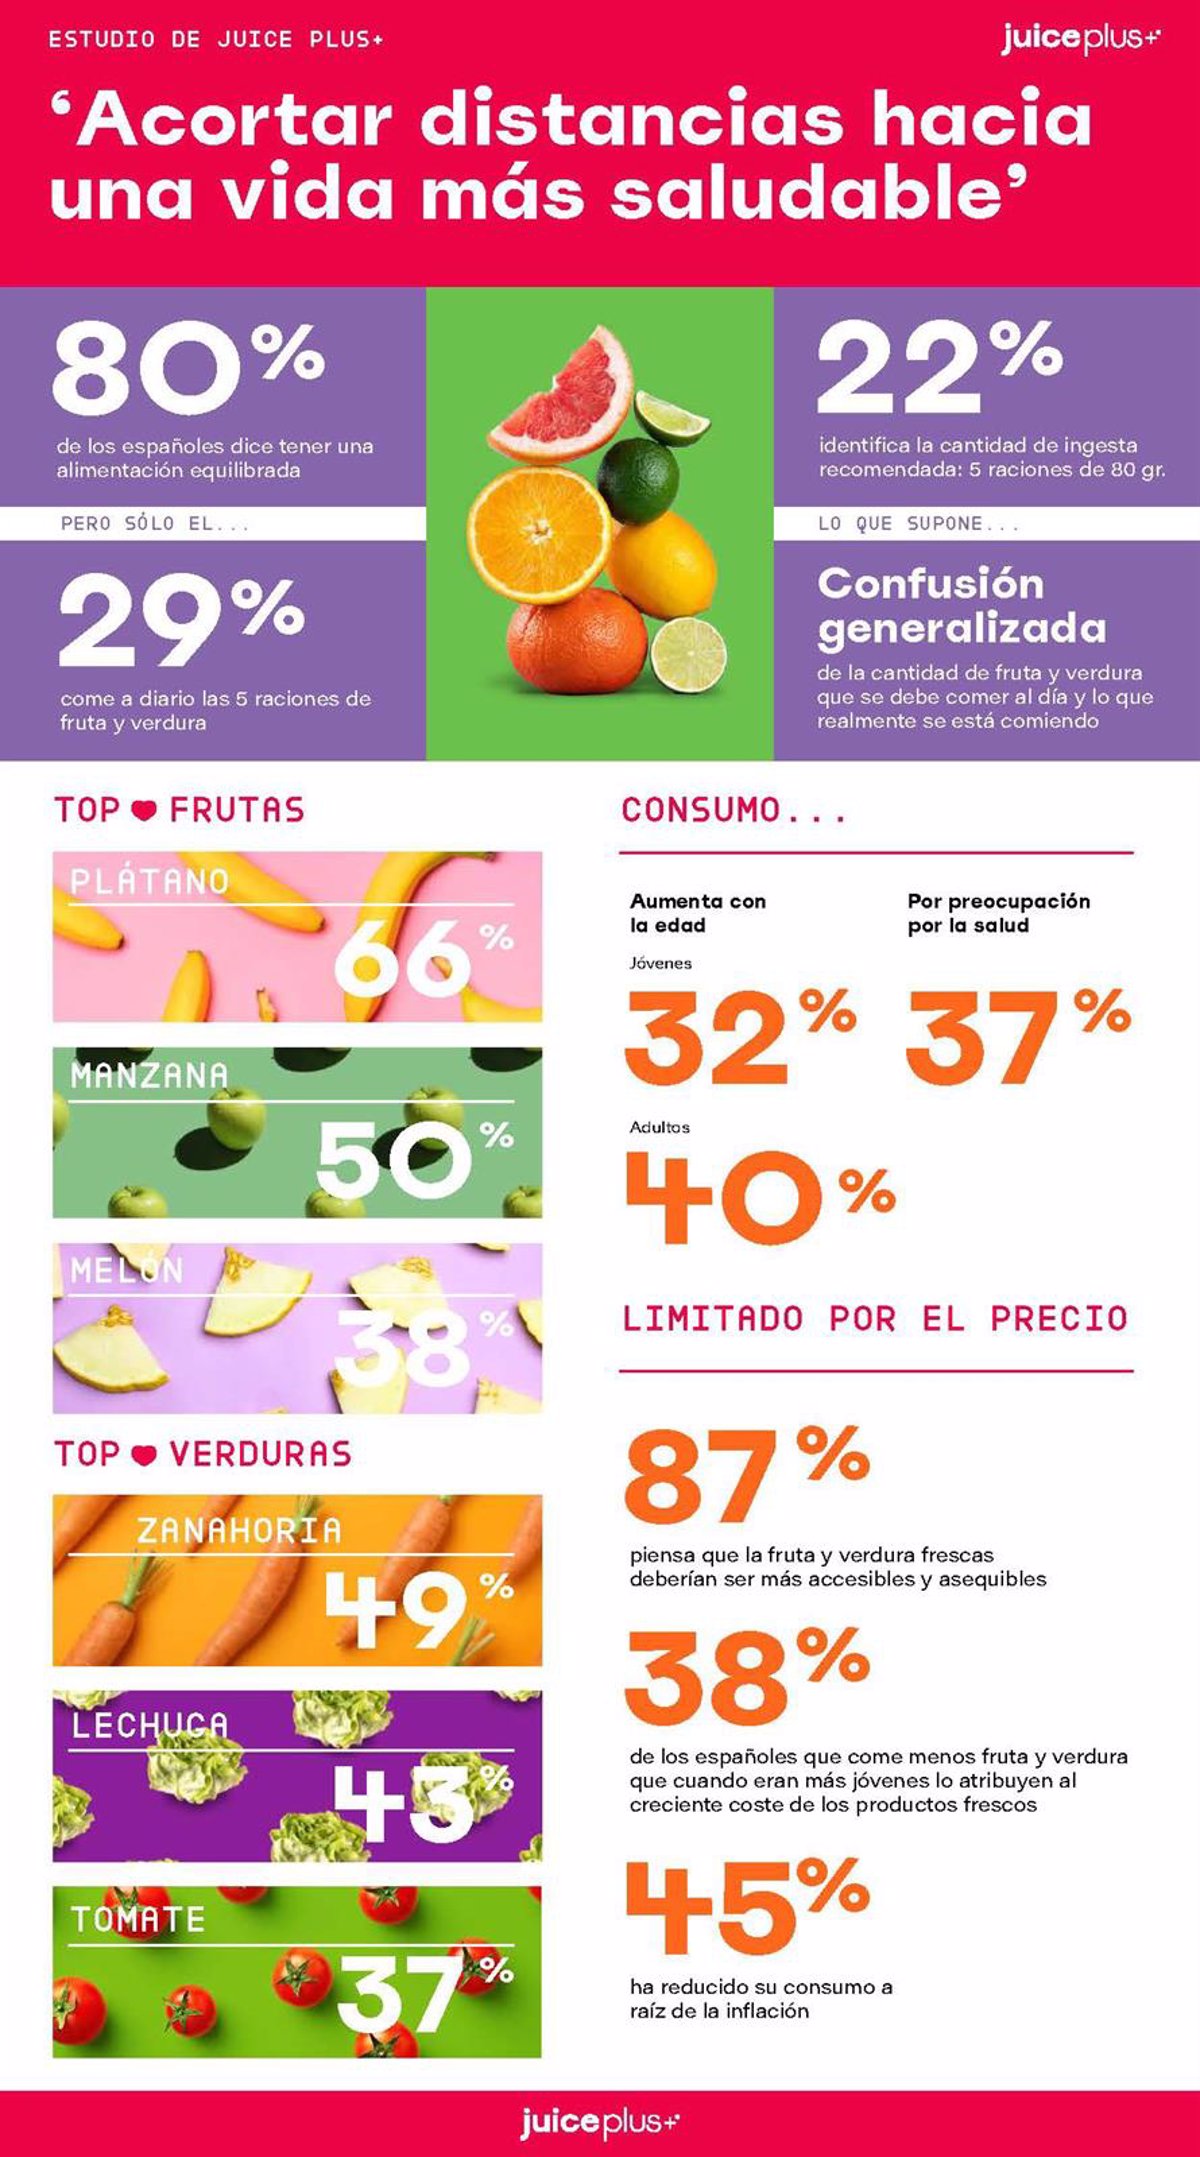 El 78% de los murcianos dice tener una alimentación equilibrada y son de los que más comen a diario fruta y verdura